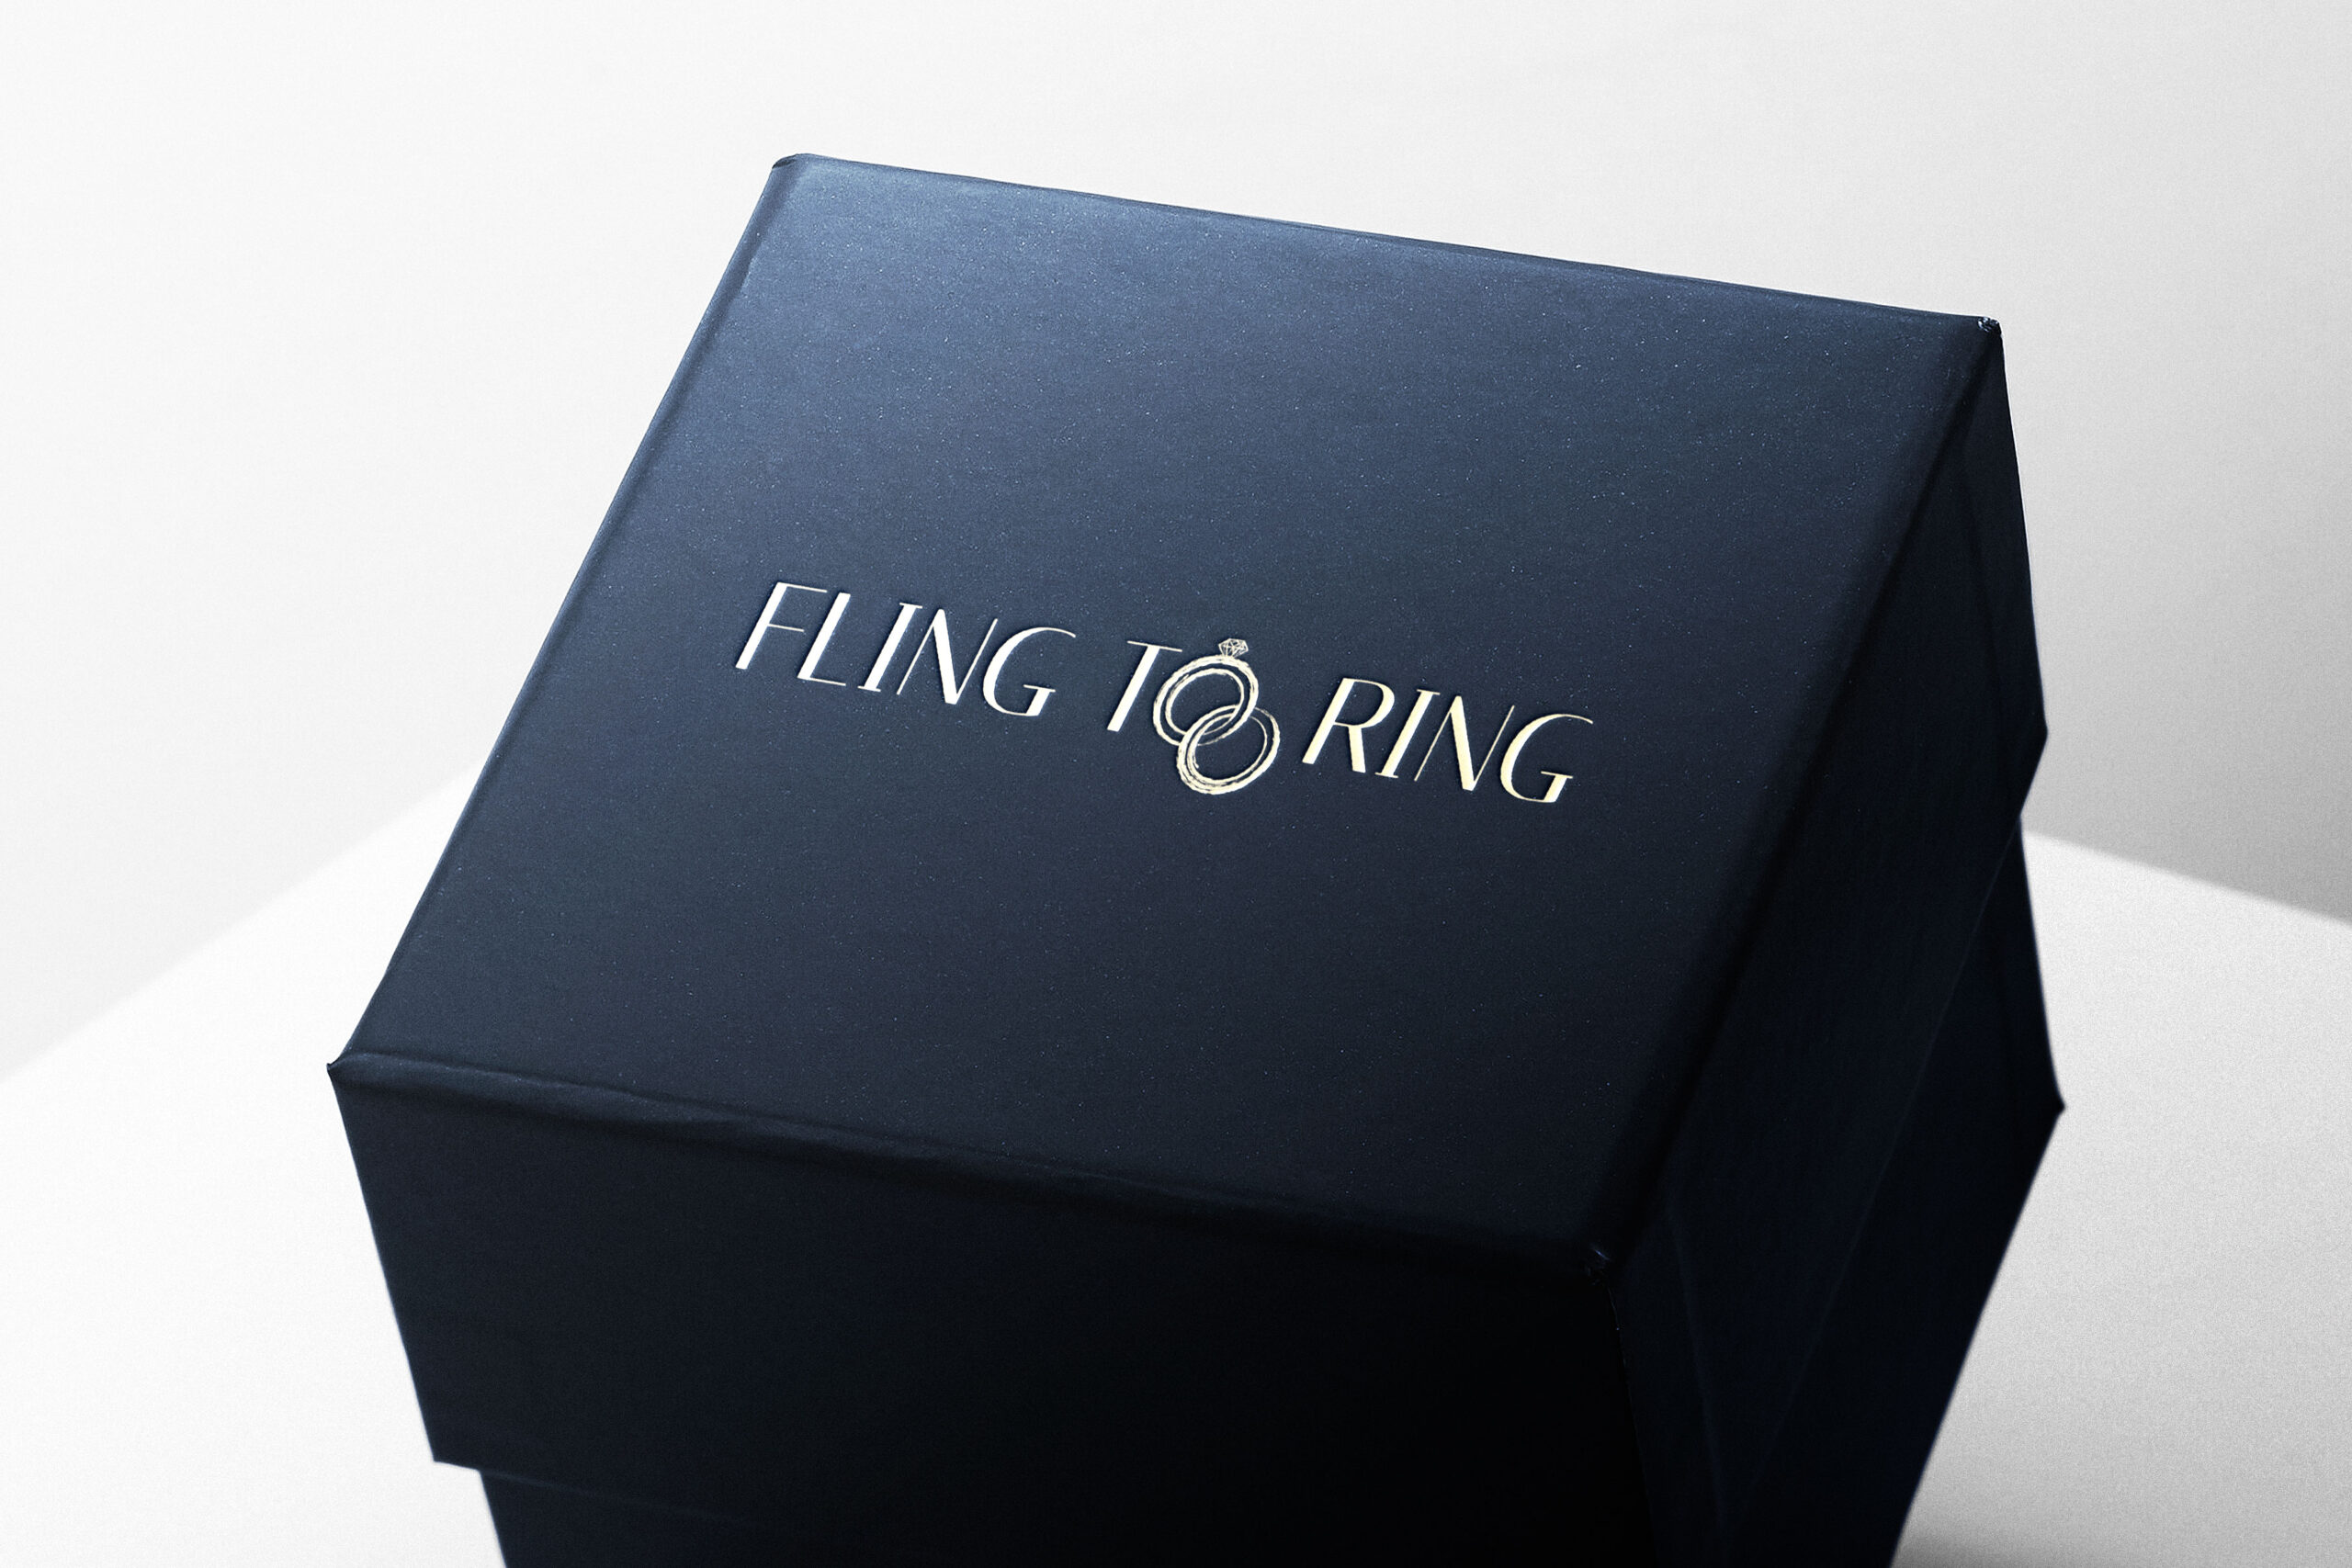 Fling to ring box